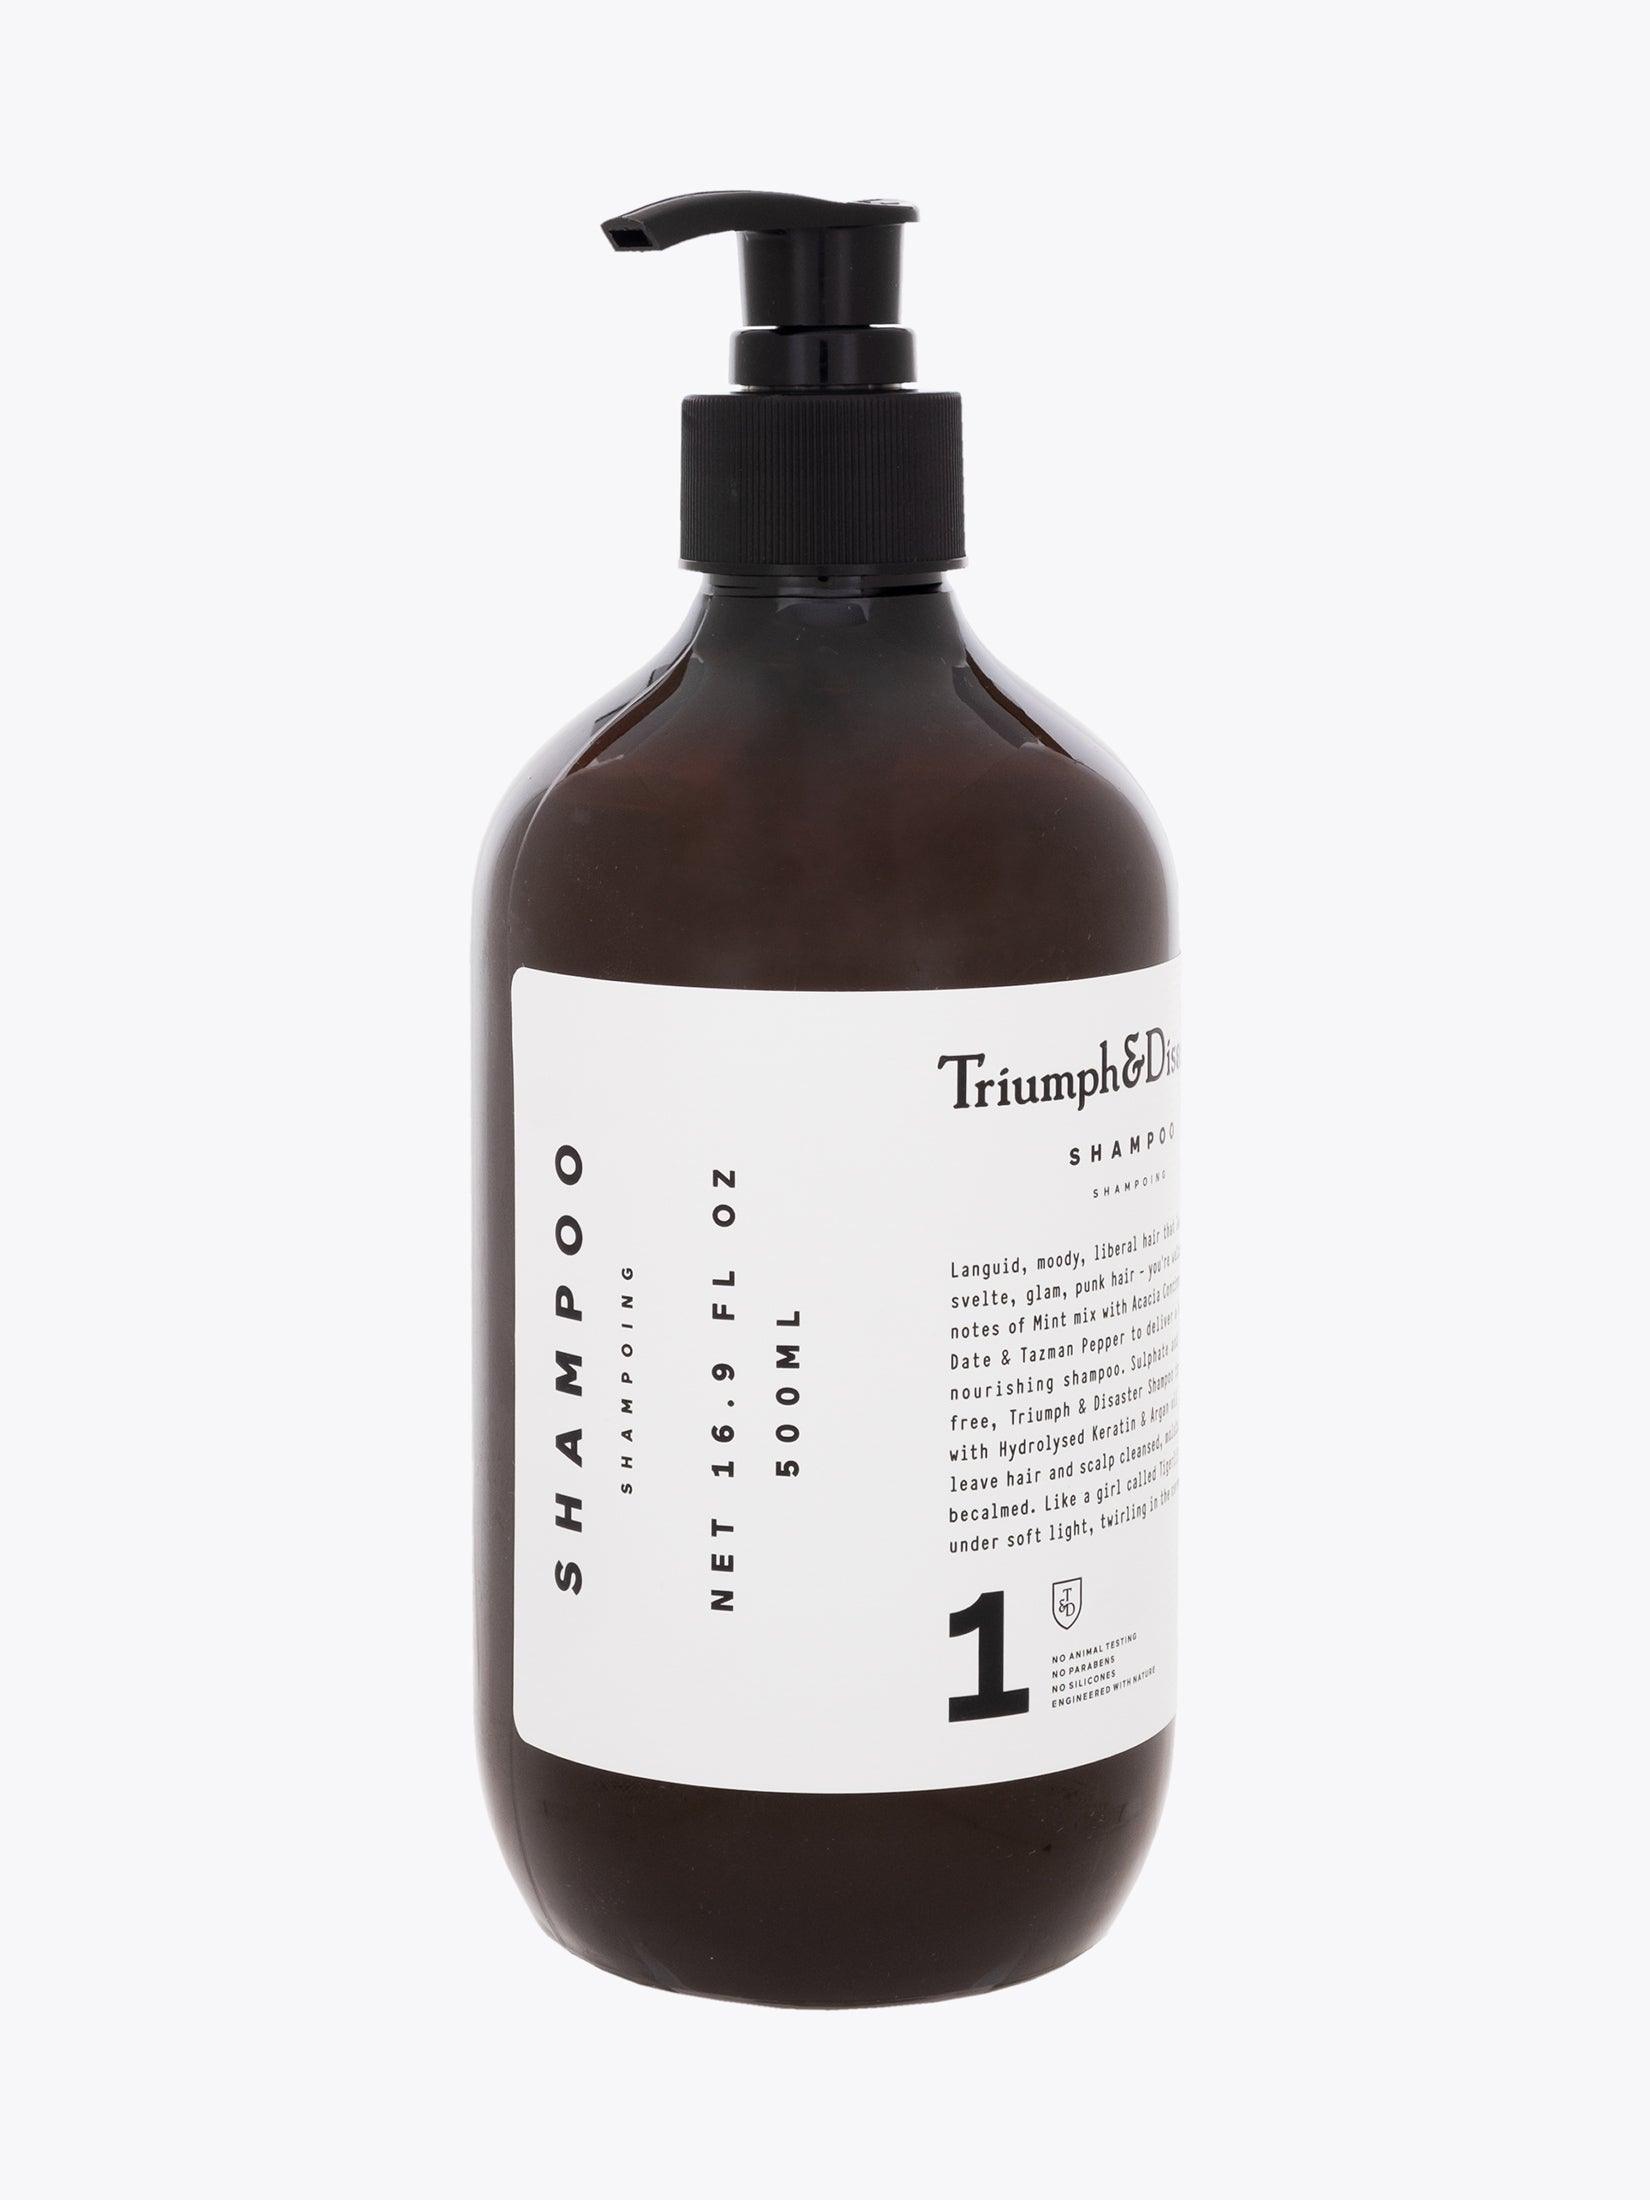 Triumph & Disaster Shampoo 500ml